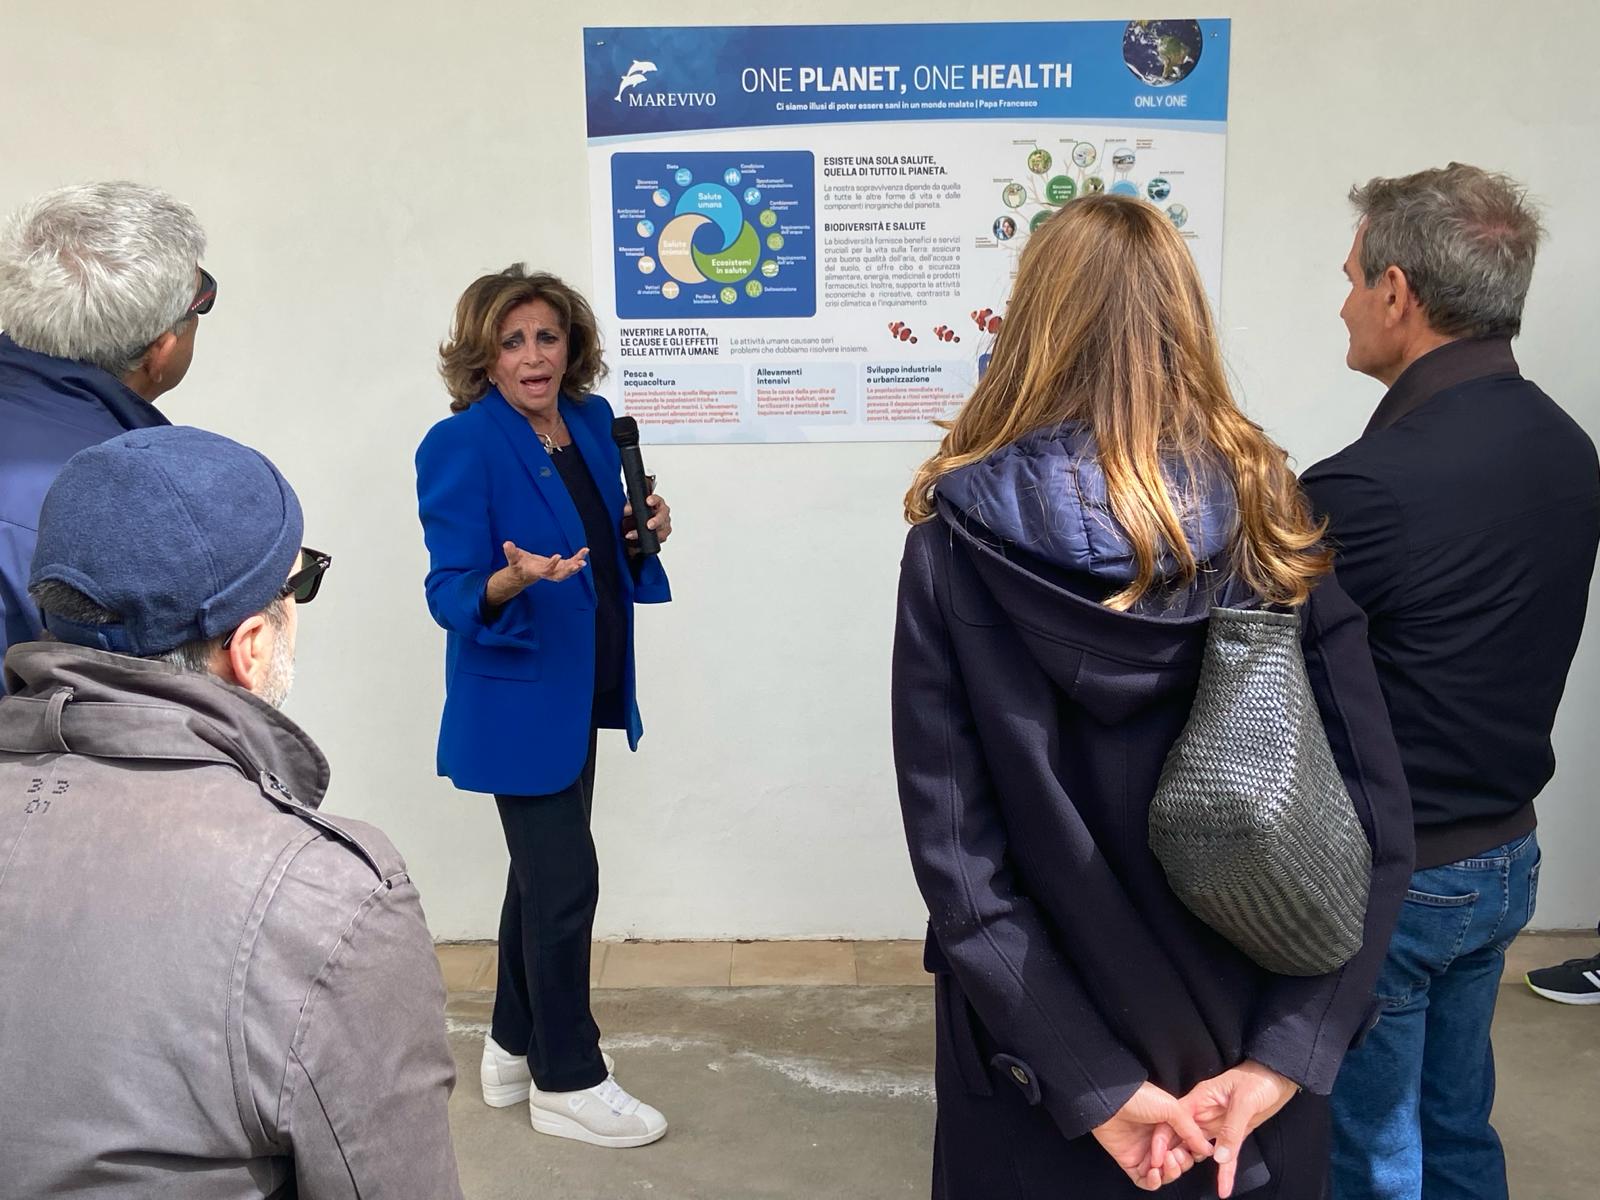 Sbarca a Capri la campagna internazionale di Marevivo “Only One” sulla transizione ecologica